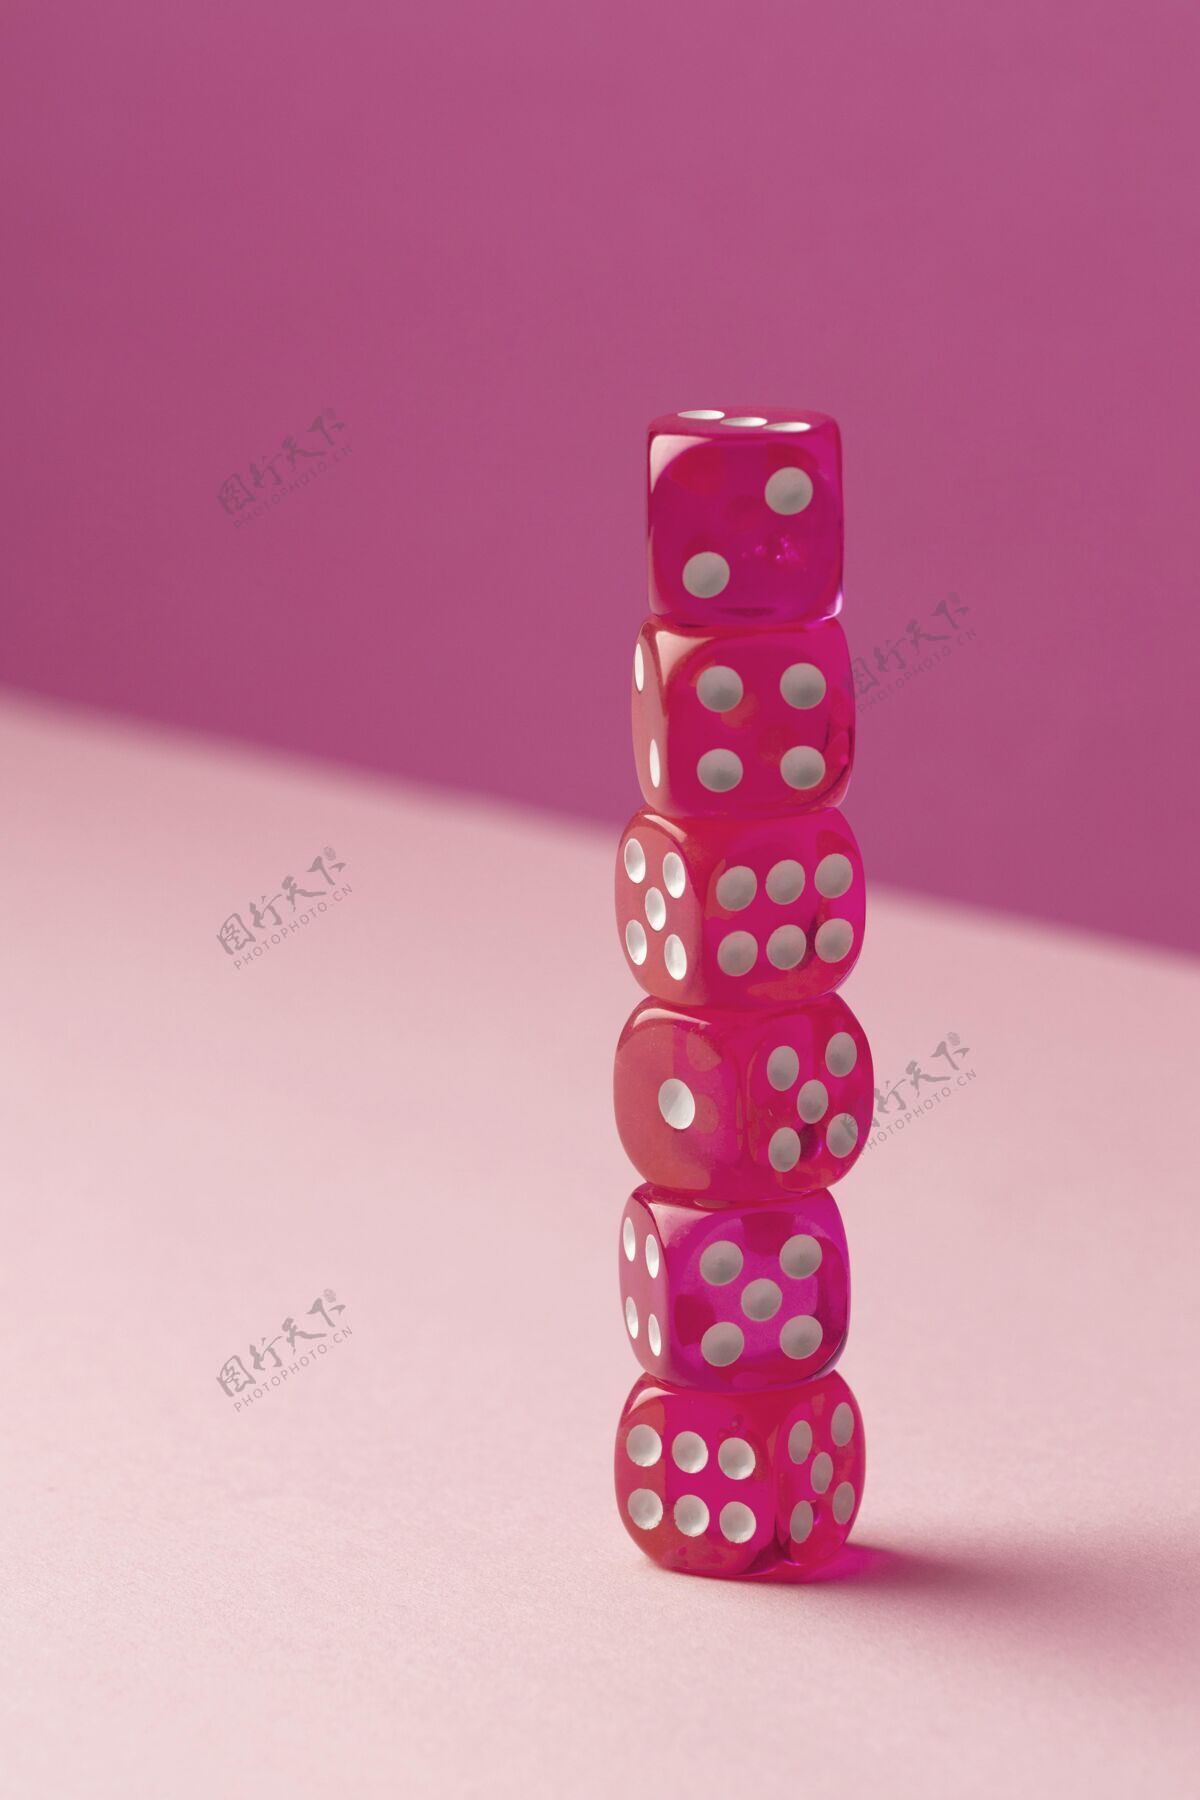 游戏粉红色背景上堆叠的粉红色骰子赌博堆栈机会